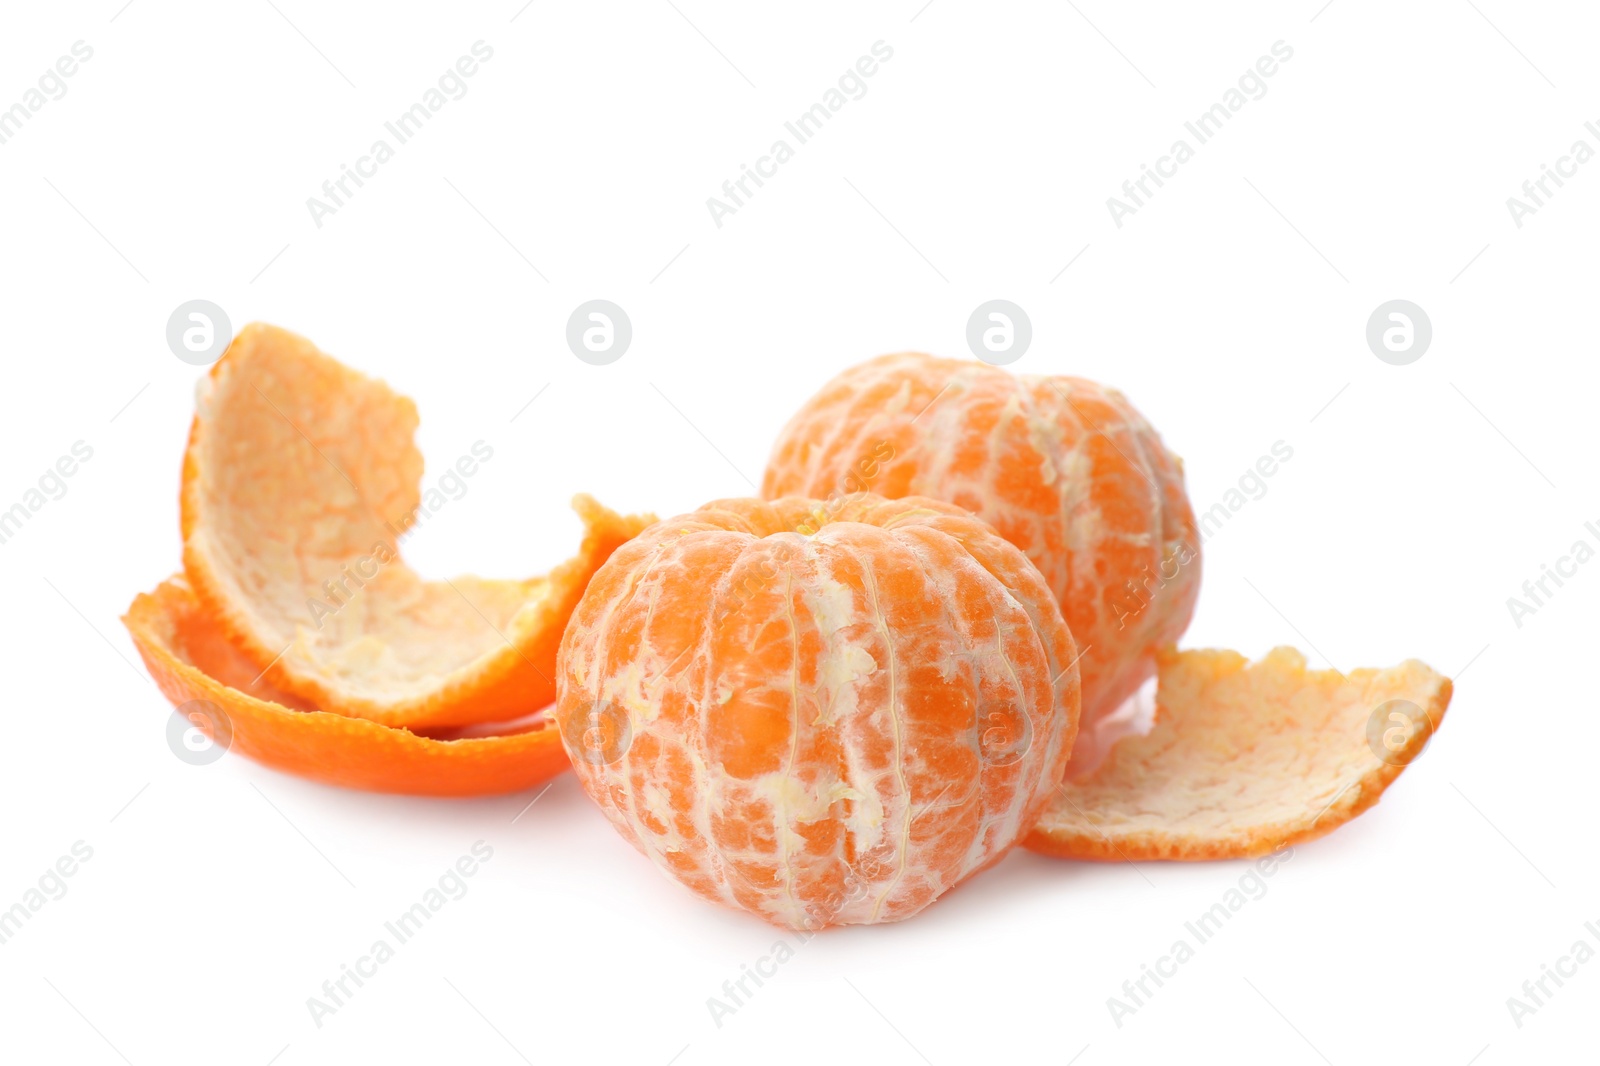 Photo of Peeled fresh tangerines on white background. Citrus fruit